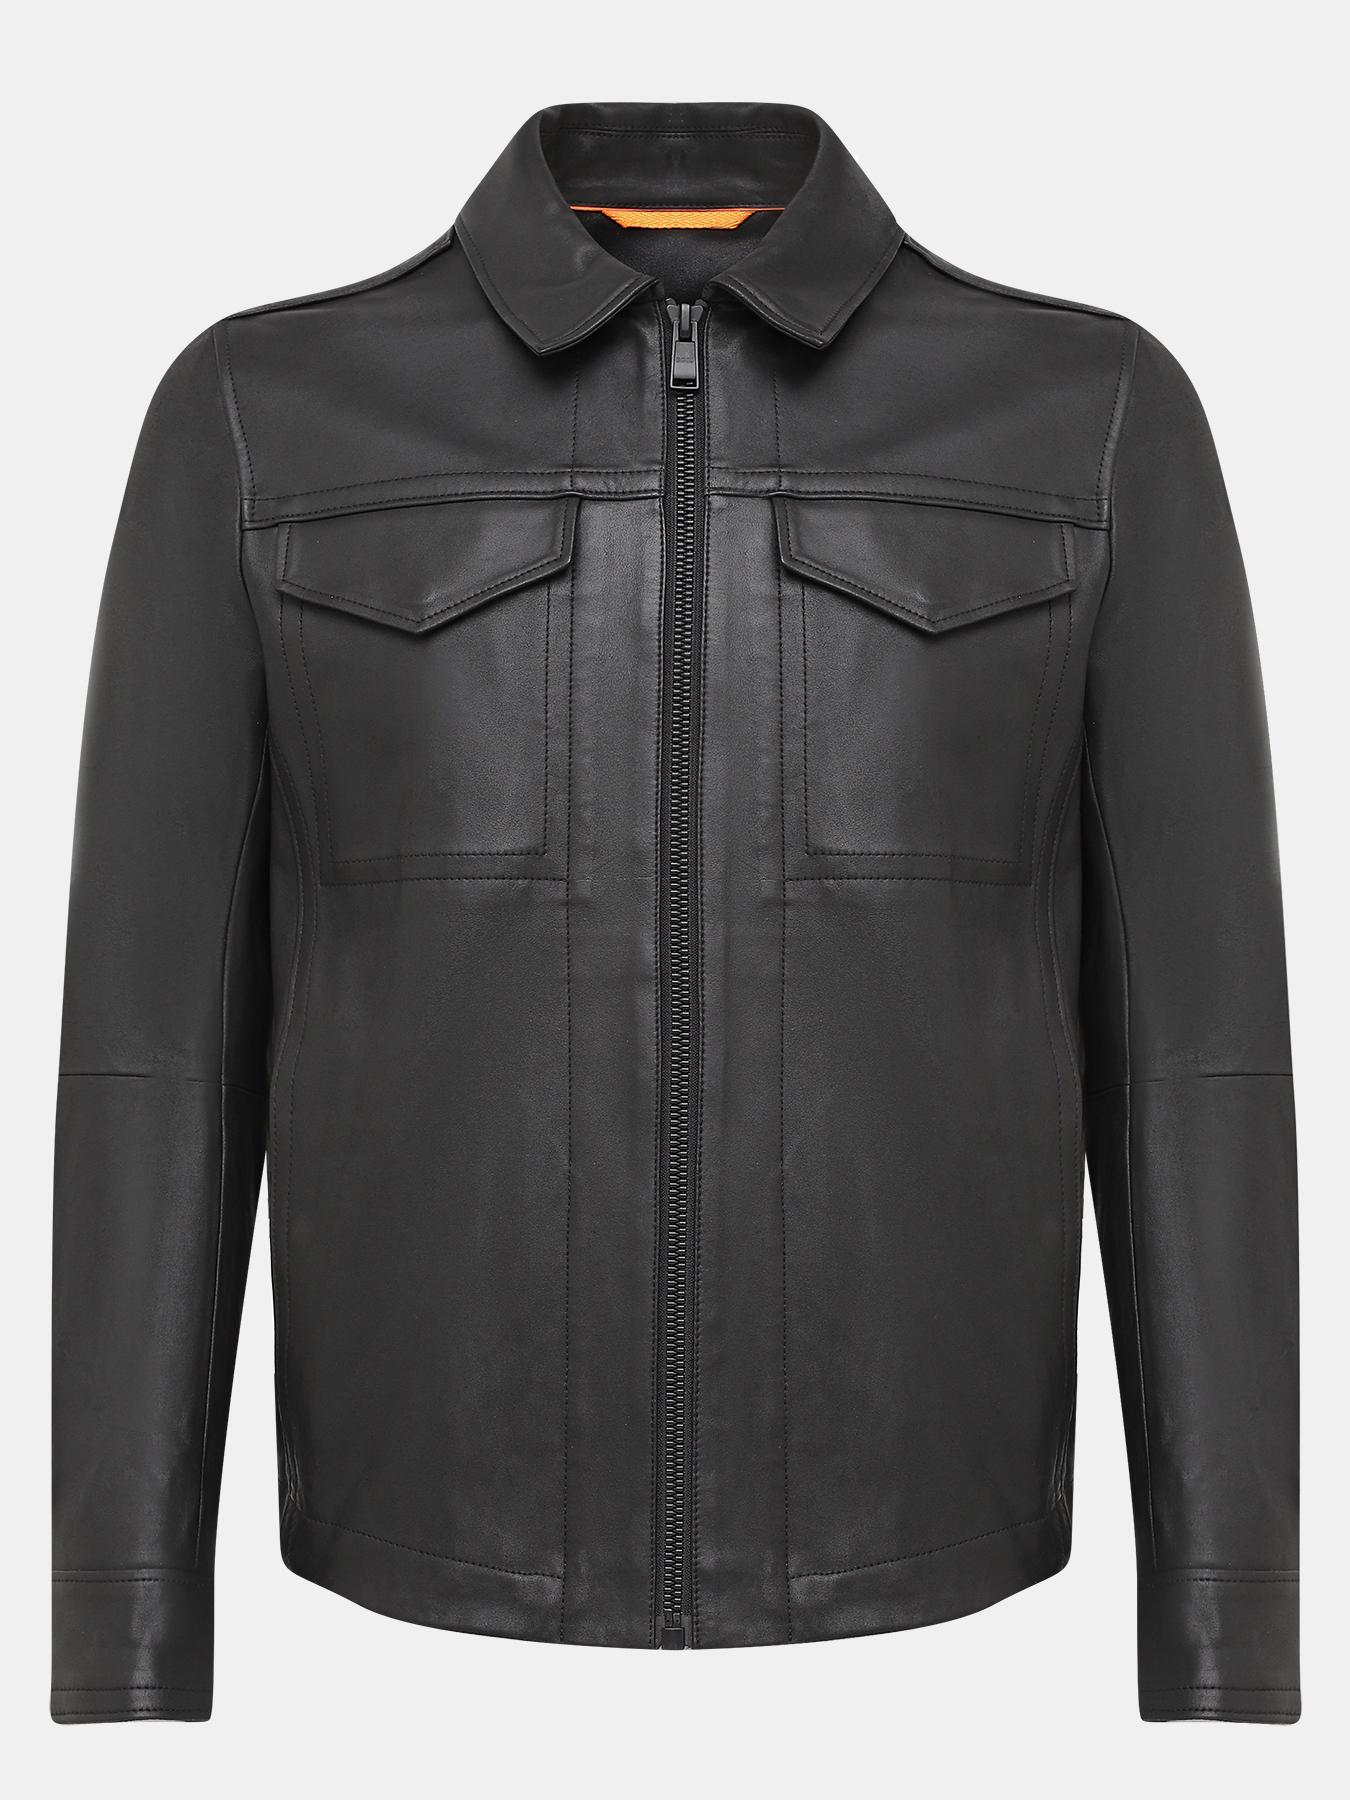 Кожаная куртка Jobeaan BOSS 421912-025, цвет черный, размер 48